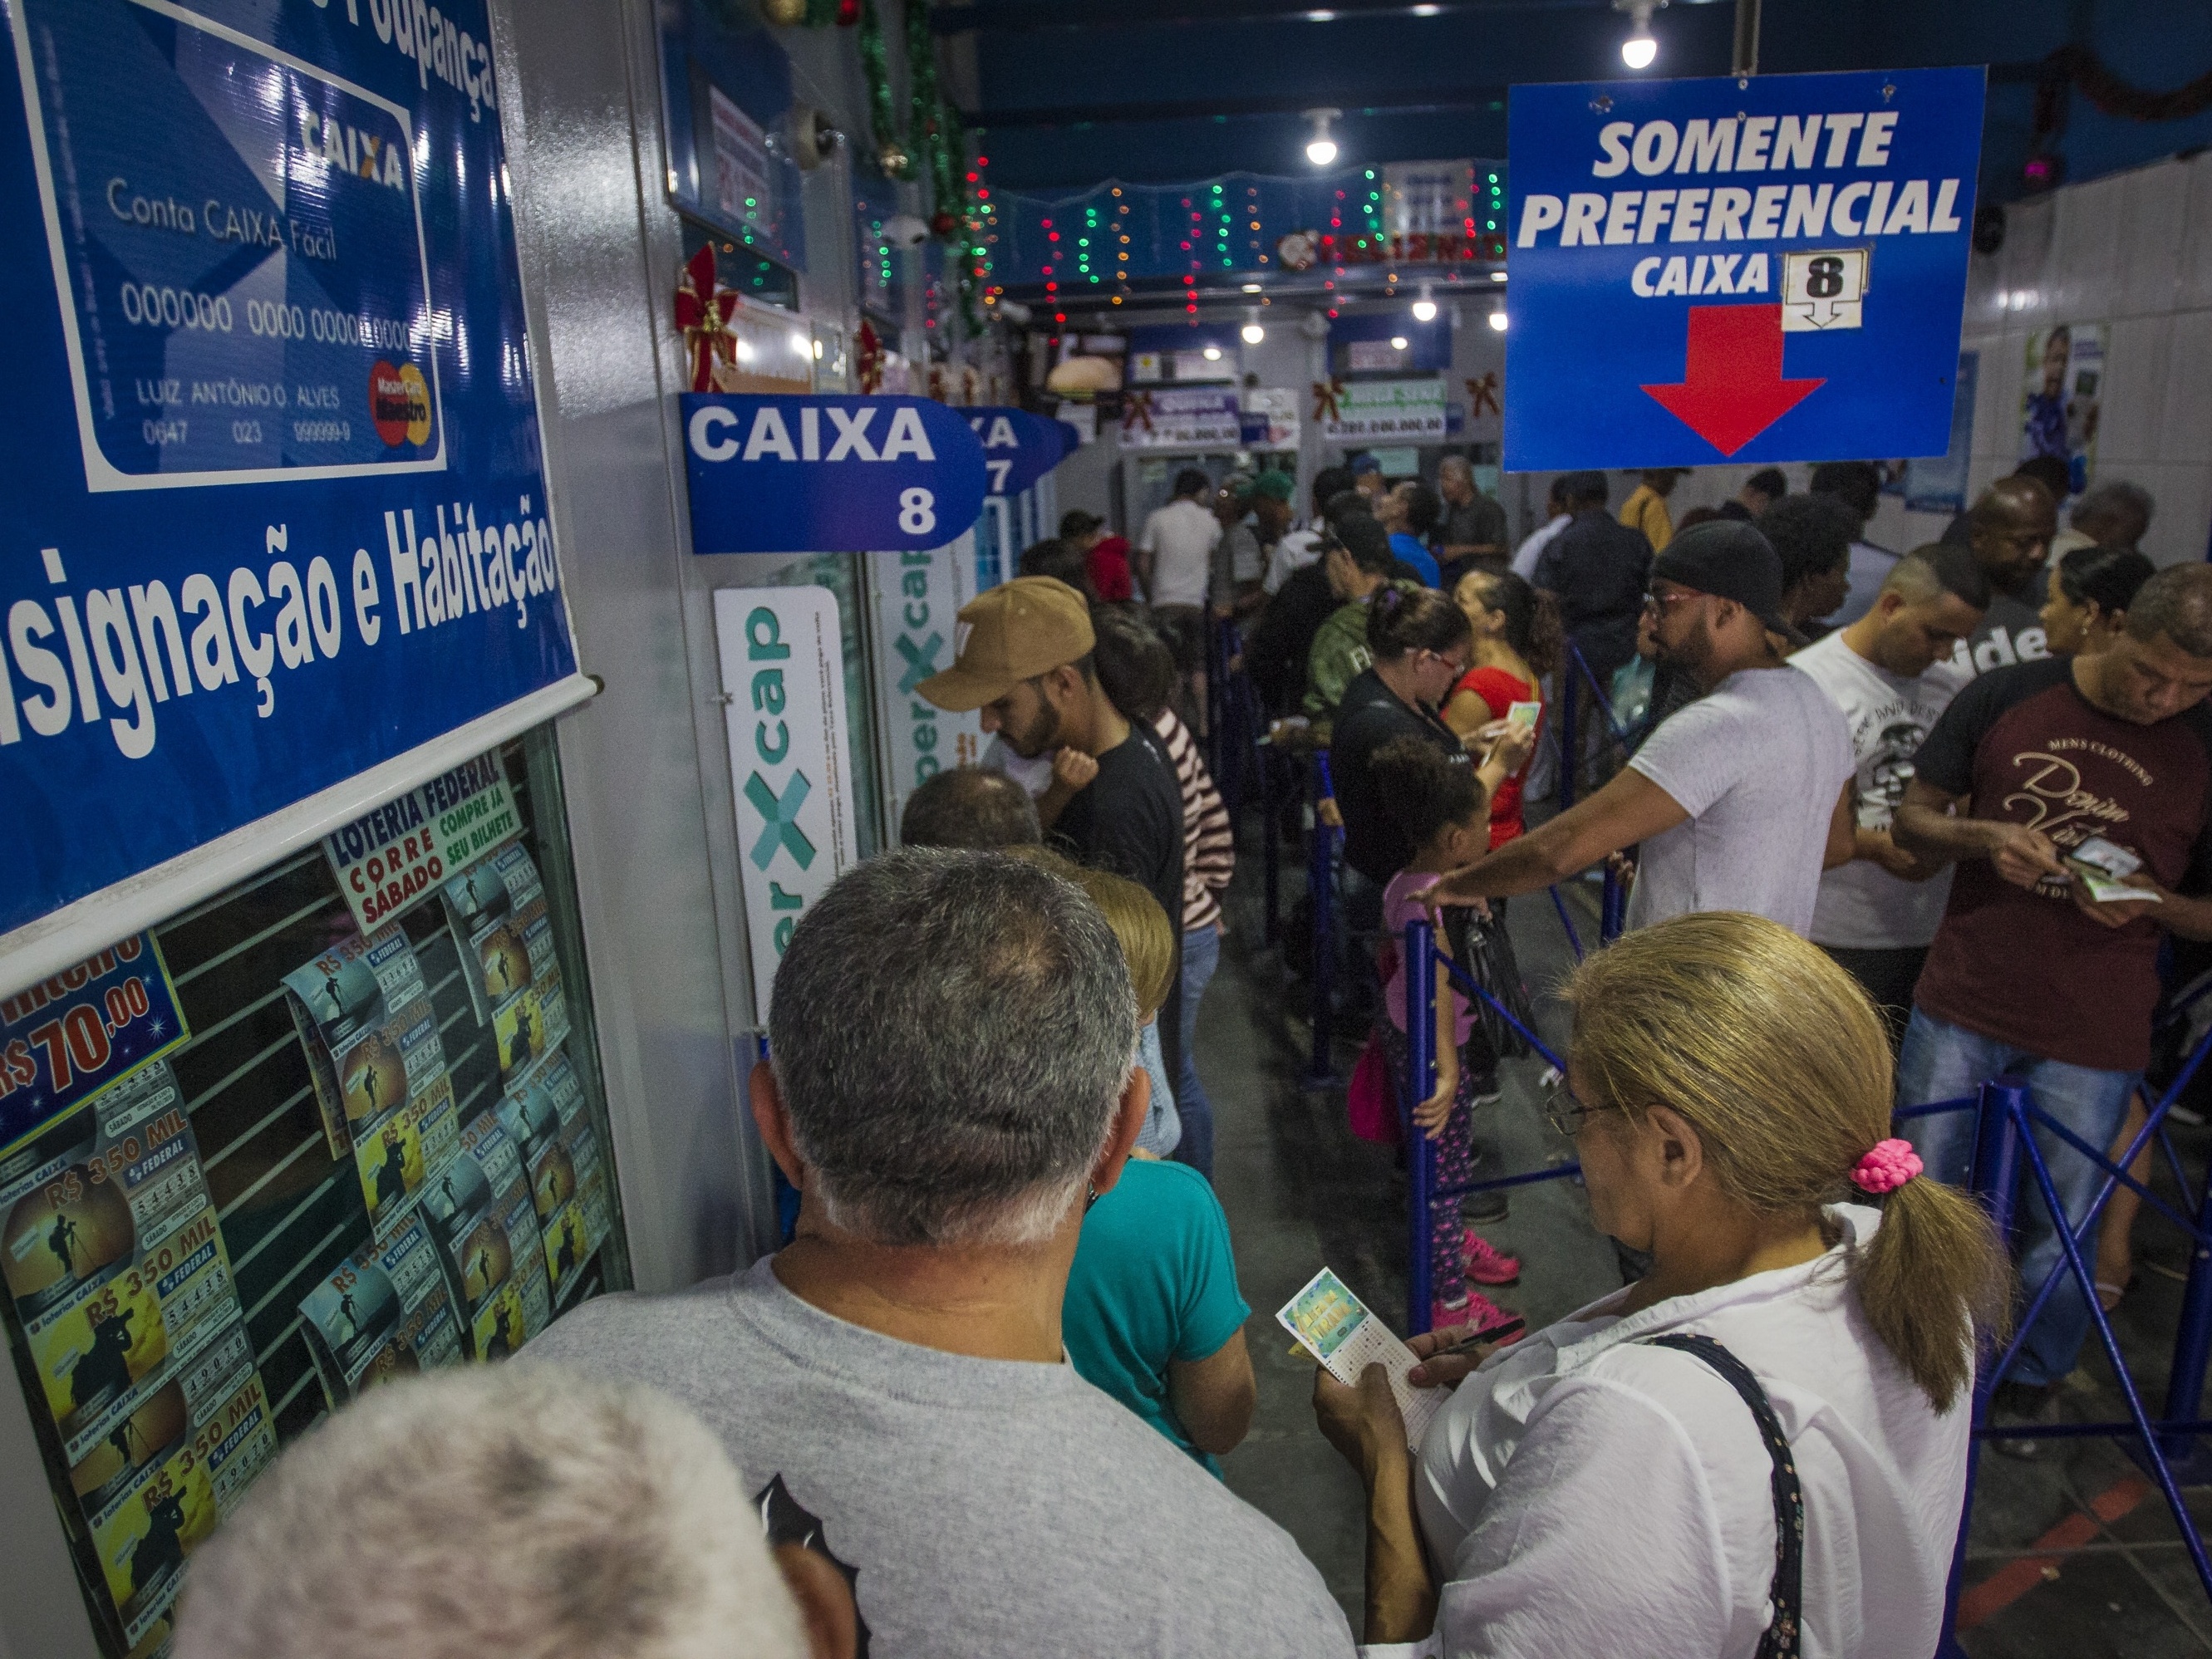 Mega da Virada congestiona site das Loterias, que cria fila de acesso